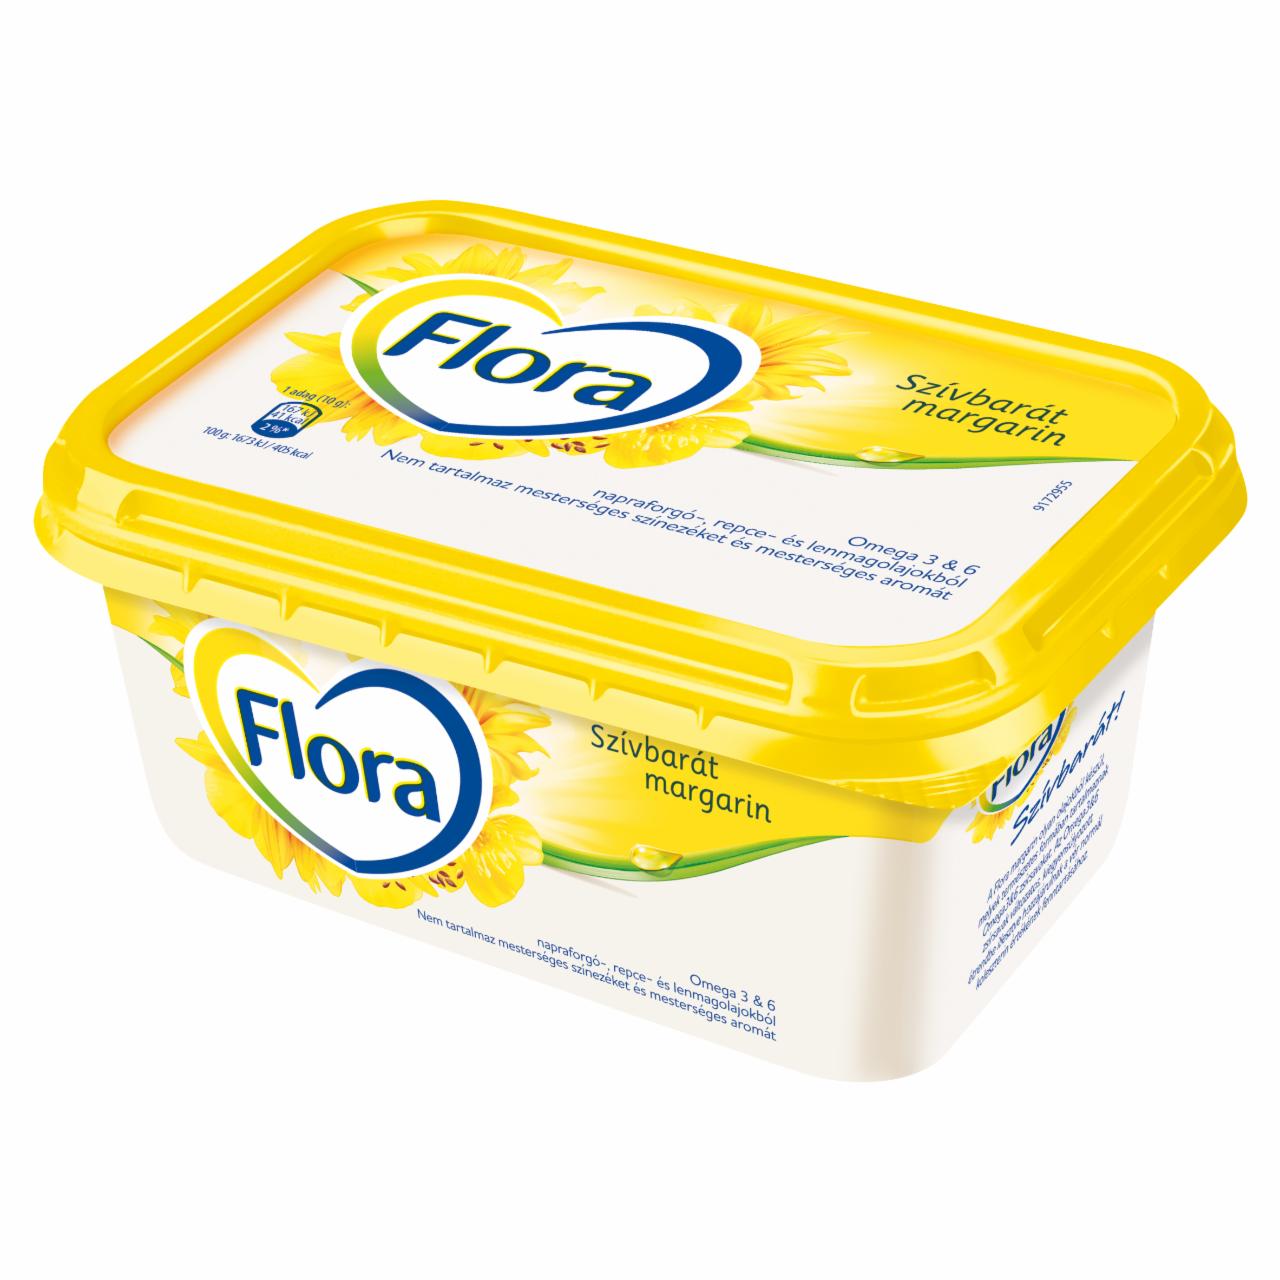 Képek - Flora csészés margarin 250 g